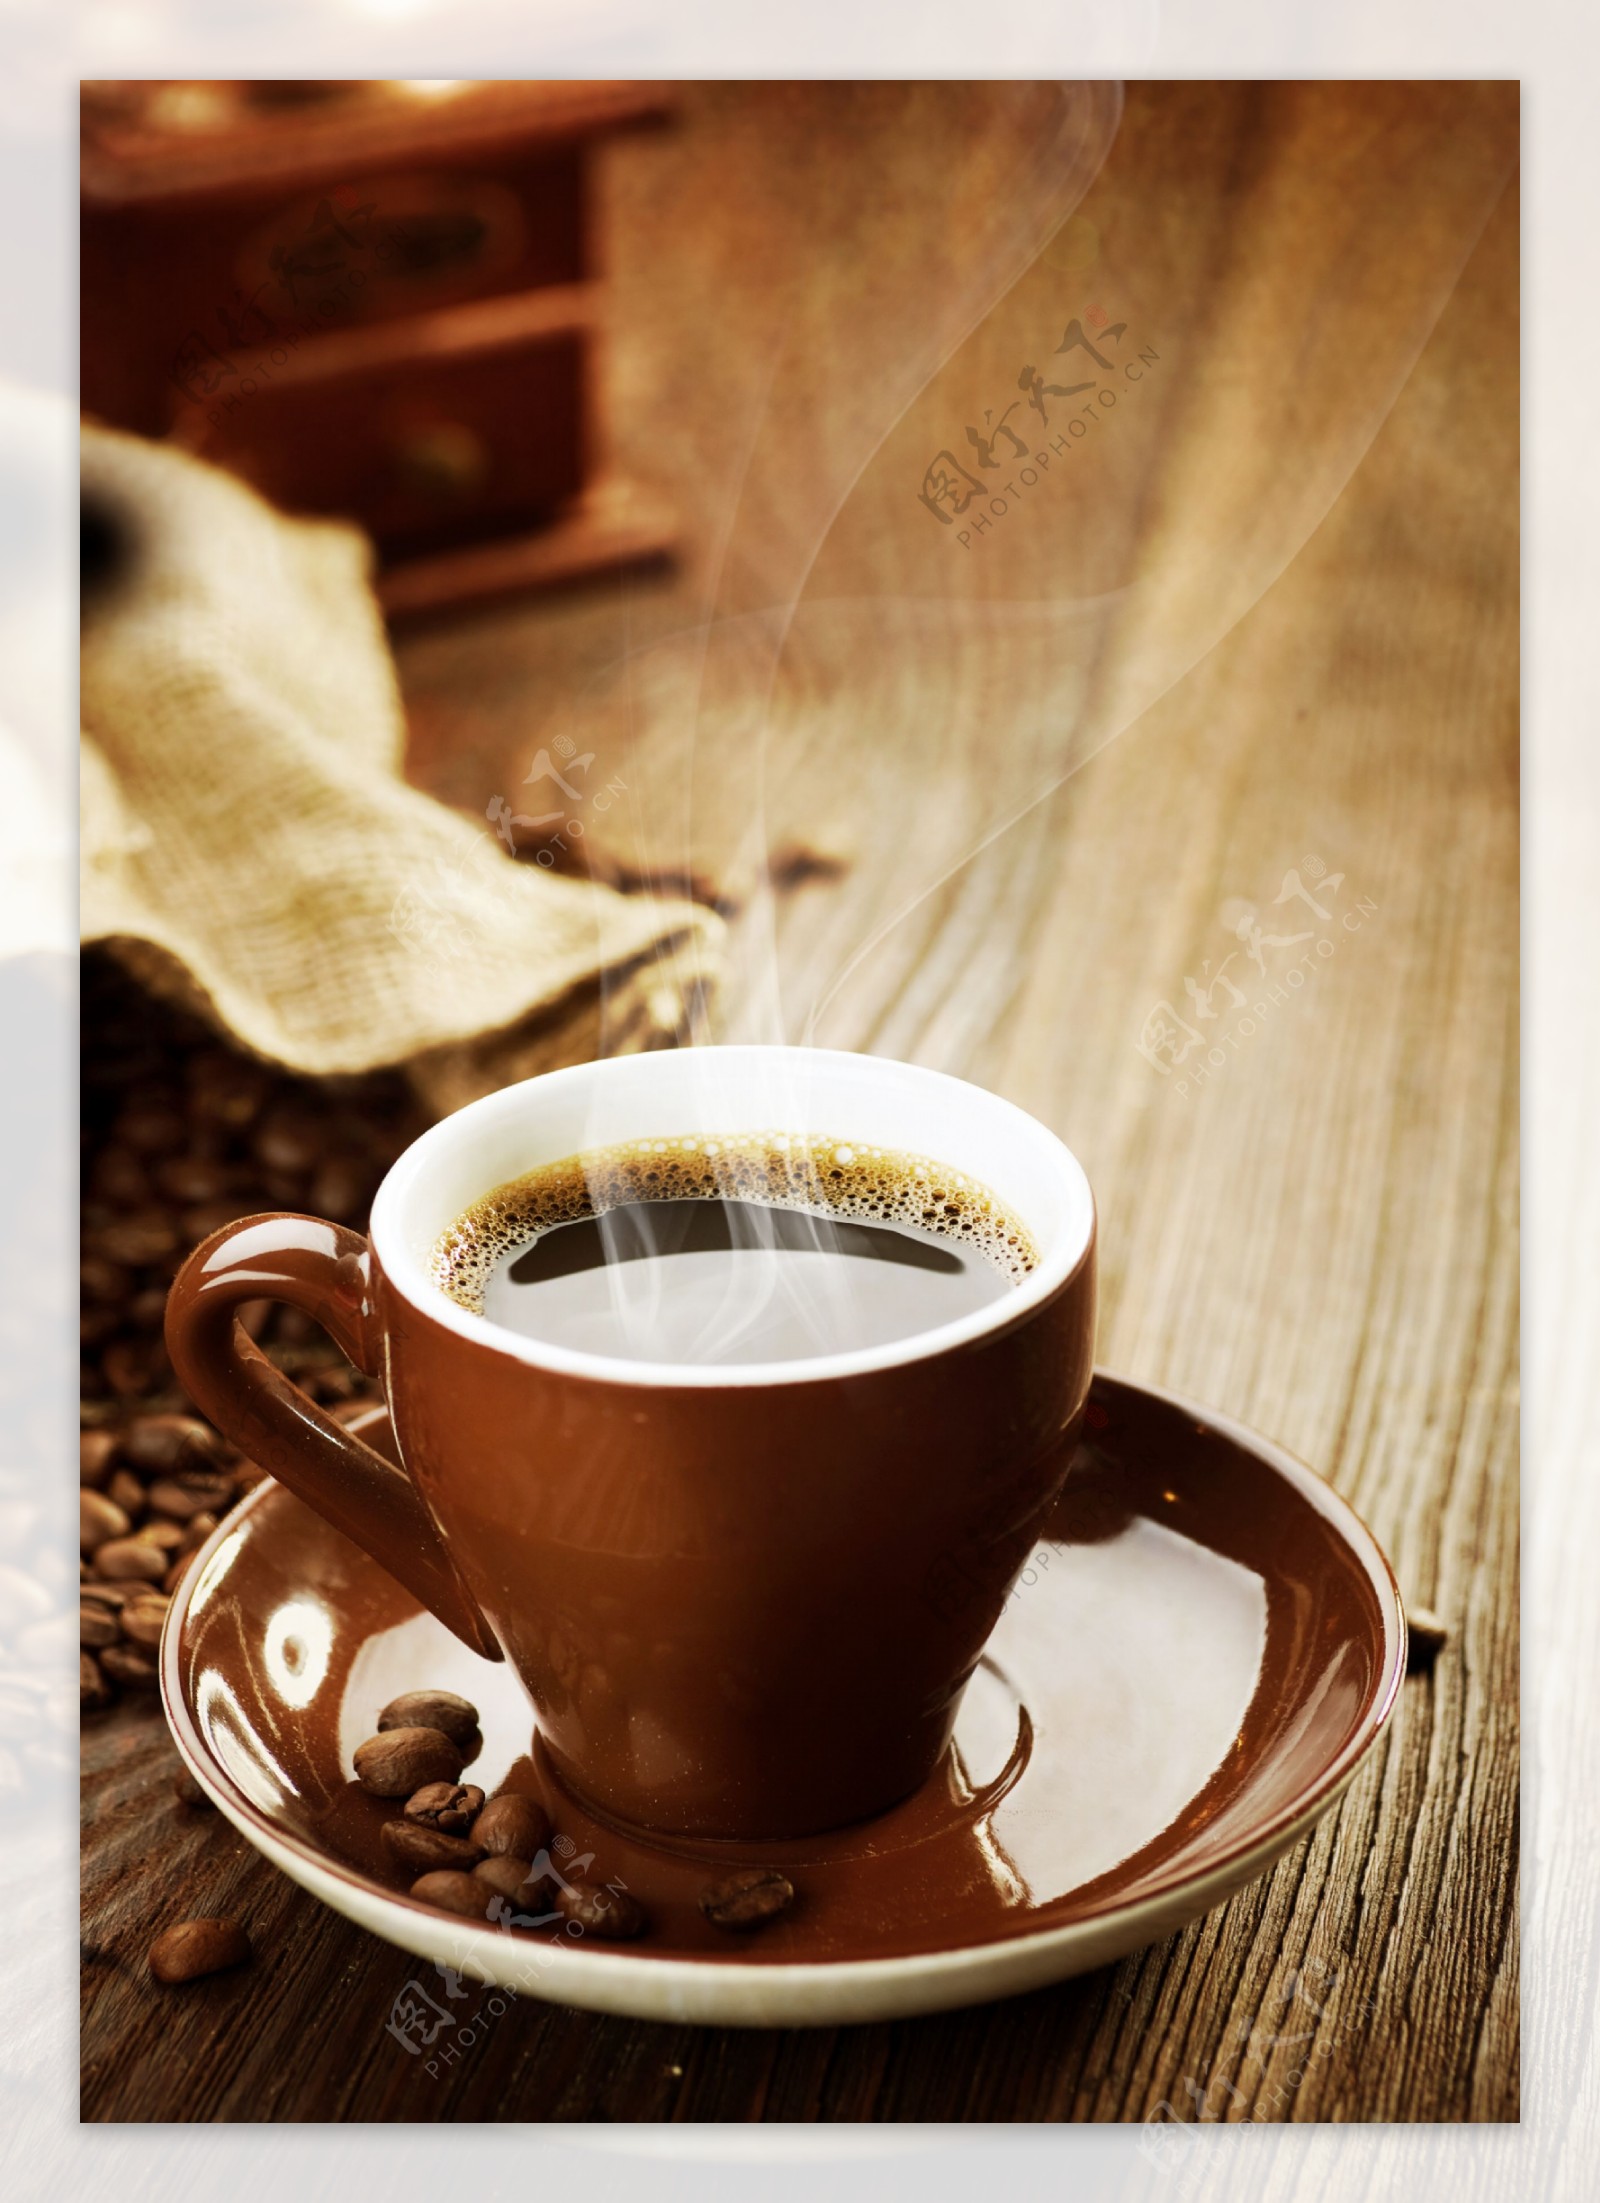 装满咖啡的棕色咖啡杯图片